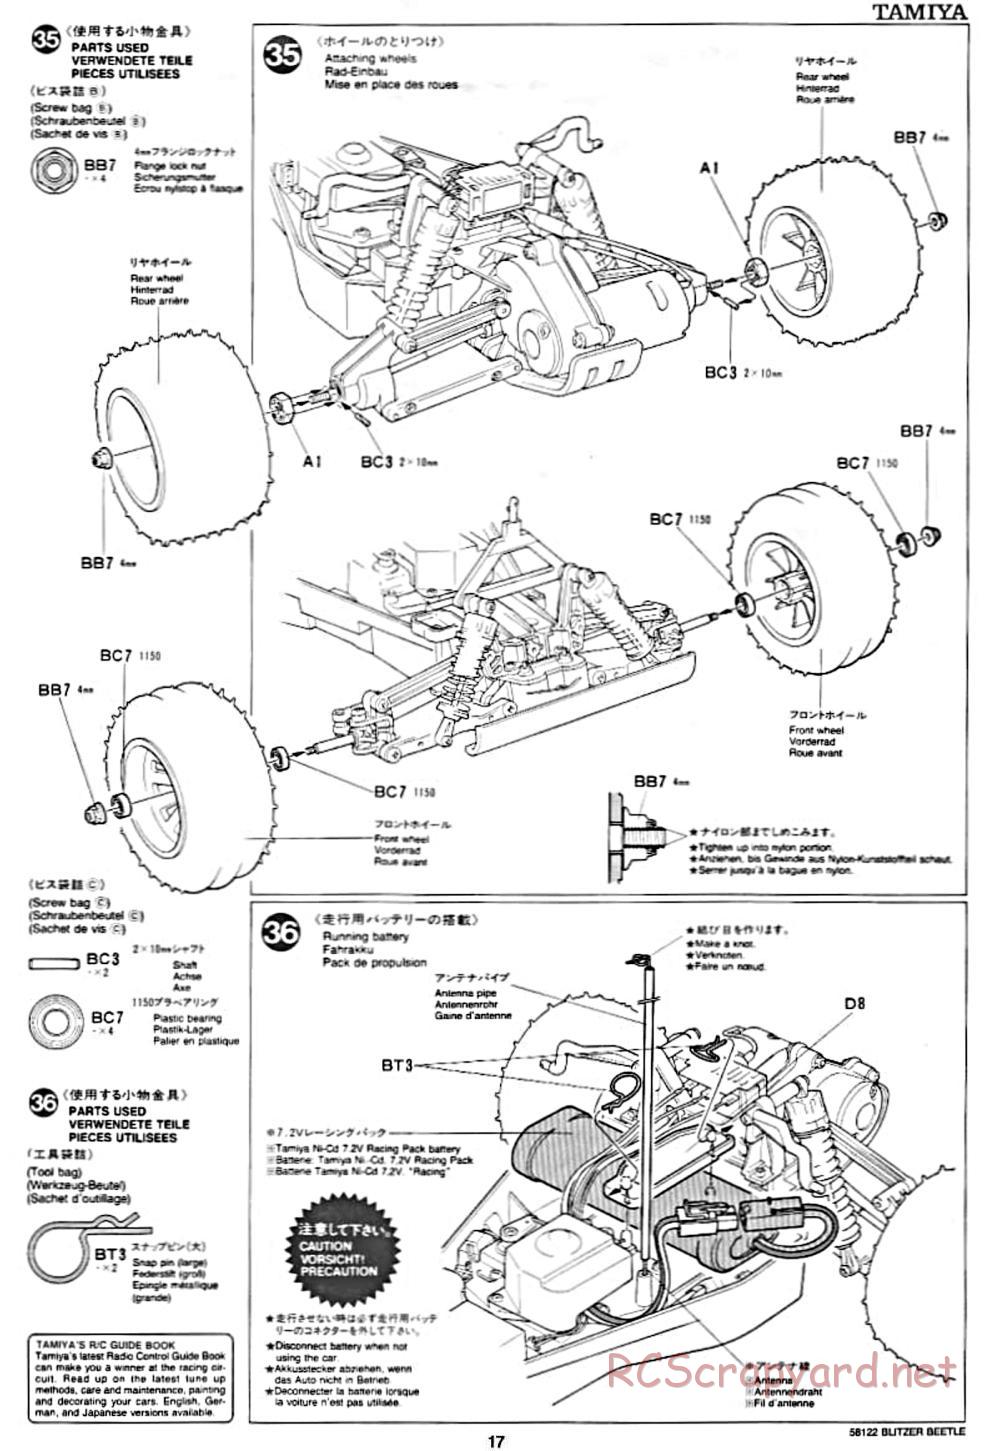 Tamiya - Blitzer Beetle Chassis - Manual - Page 17